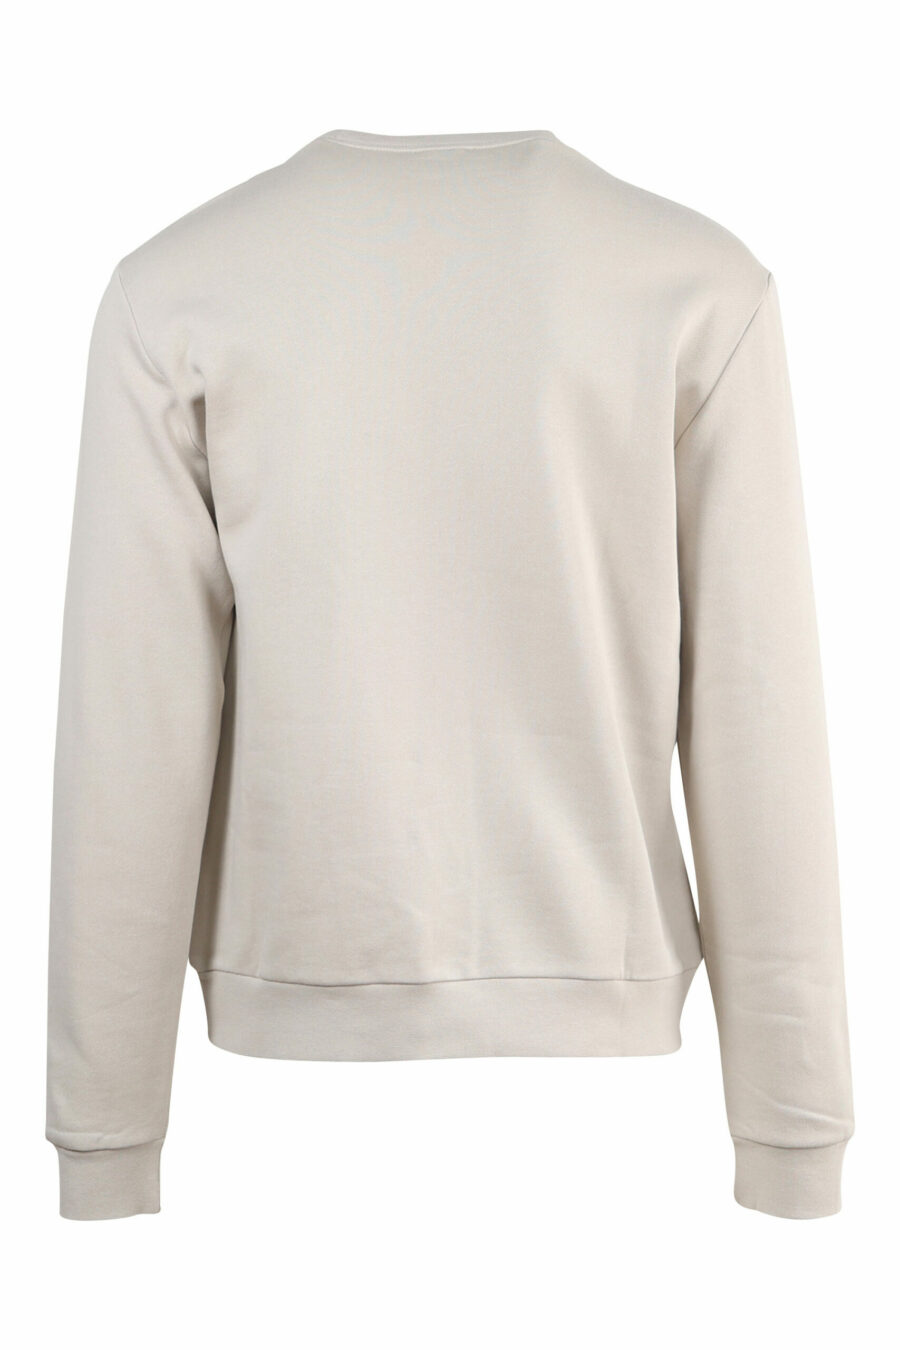 Beigefarbenes Sweatshirt mit schwarzem "lux identity" Maxilogo - 8056787941793 1 skaliert